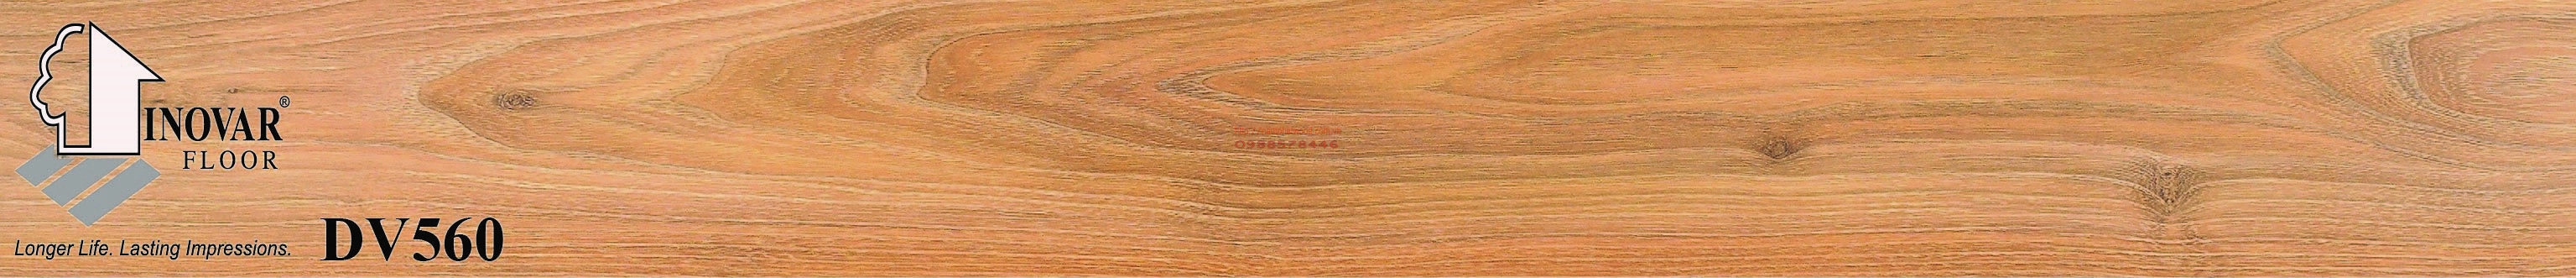 Sàn gỗ Inovar DV 560